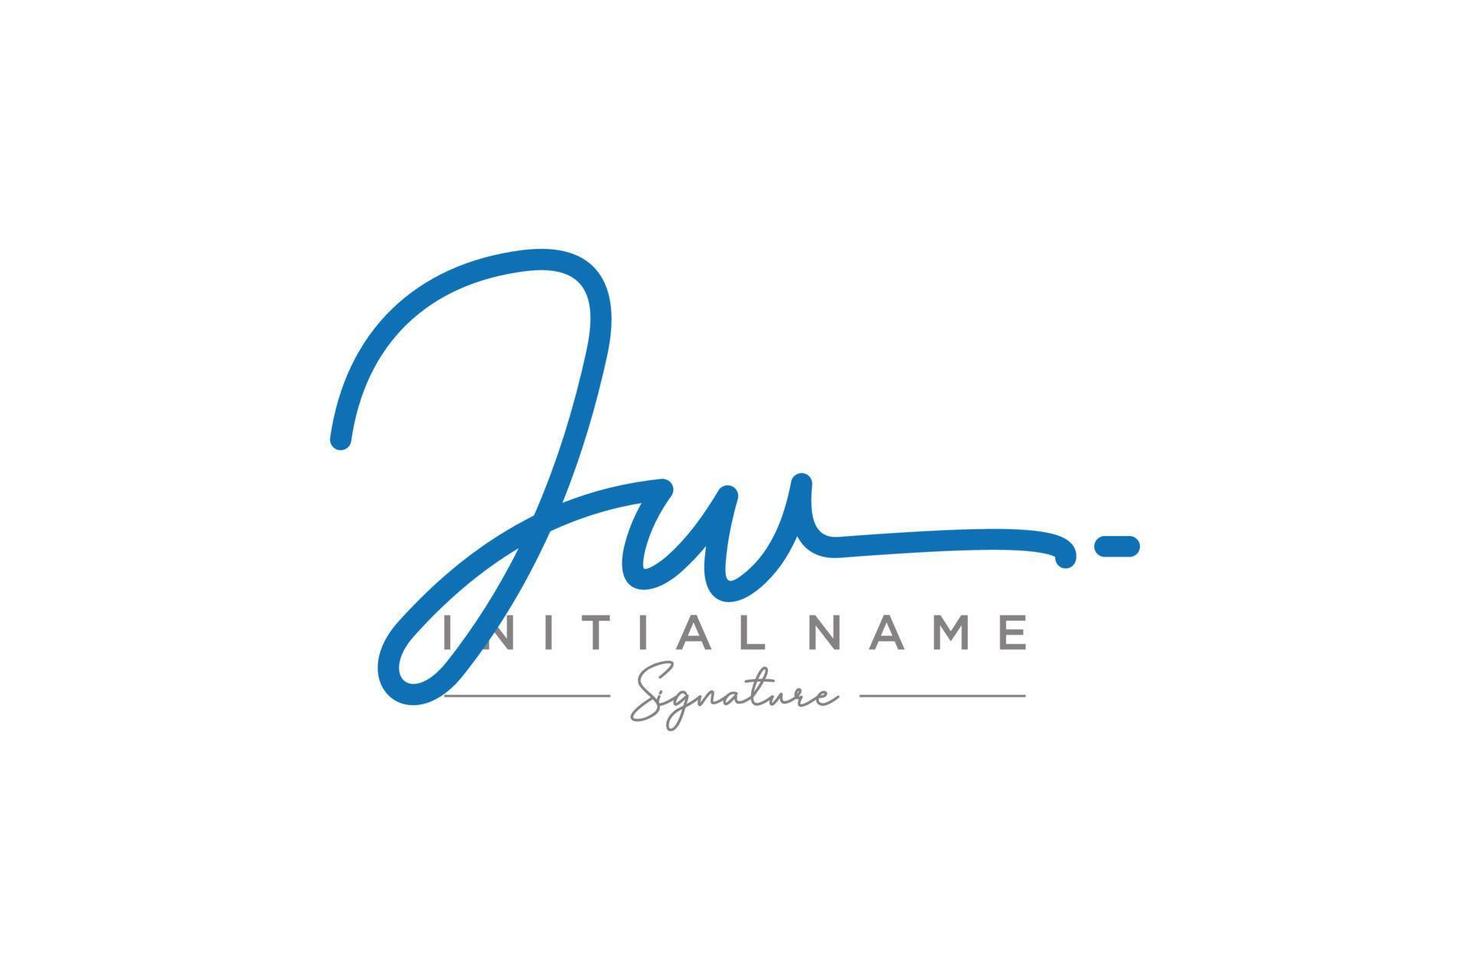 vector de plantilla de logotipo de firma jw inicial. ilustración de vector de letras de caligrafía dibujada a mano.